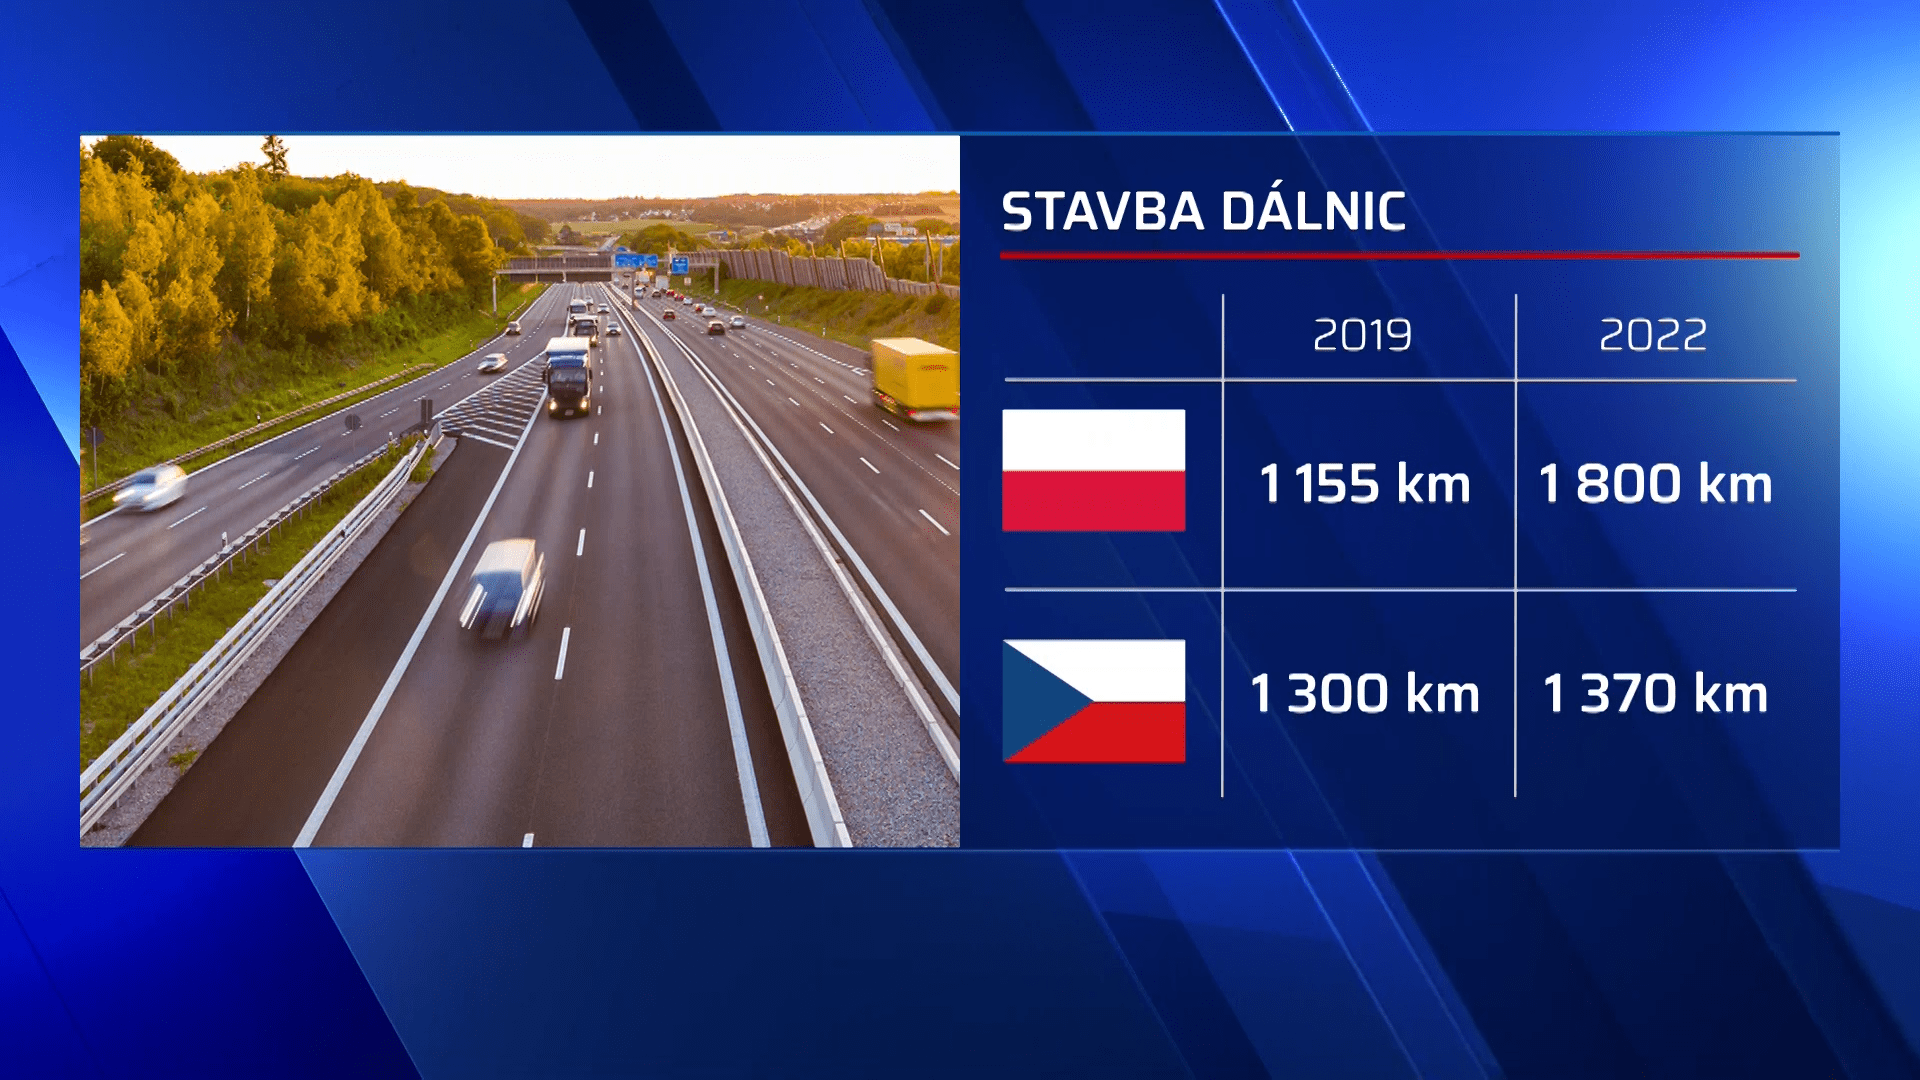 Poláci už mají dálnici S3 z Kamenné hory k českým hranicím dokončenou a připravenou ke zprovoznění. Česko však ještě ani nezačalo stavět.